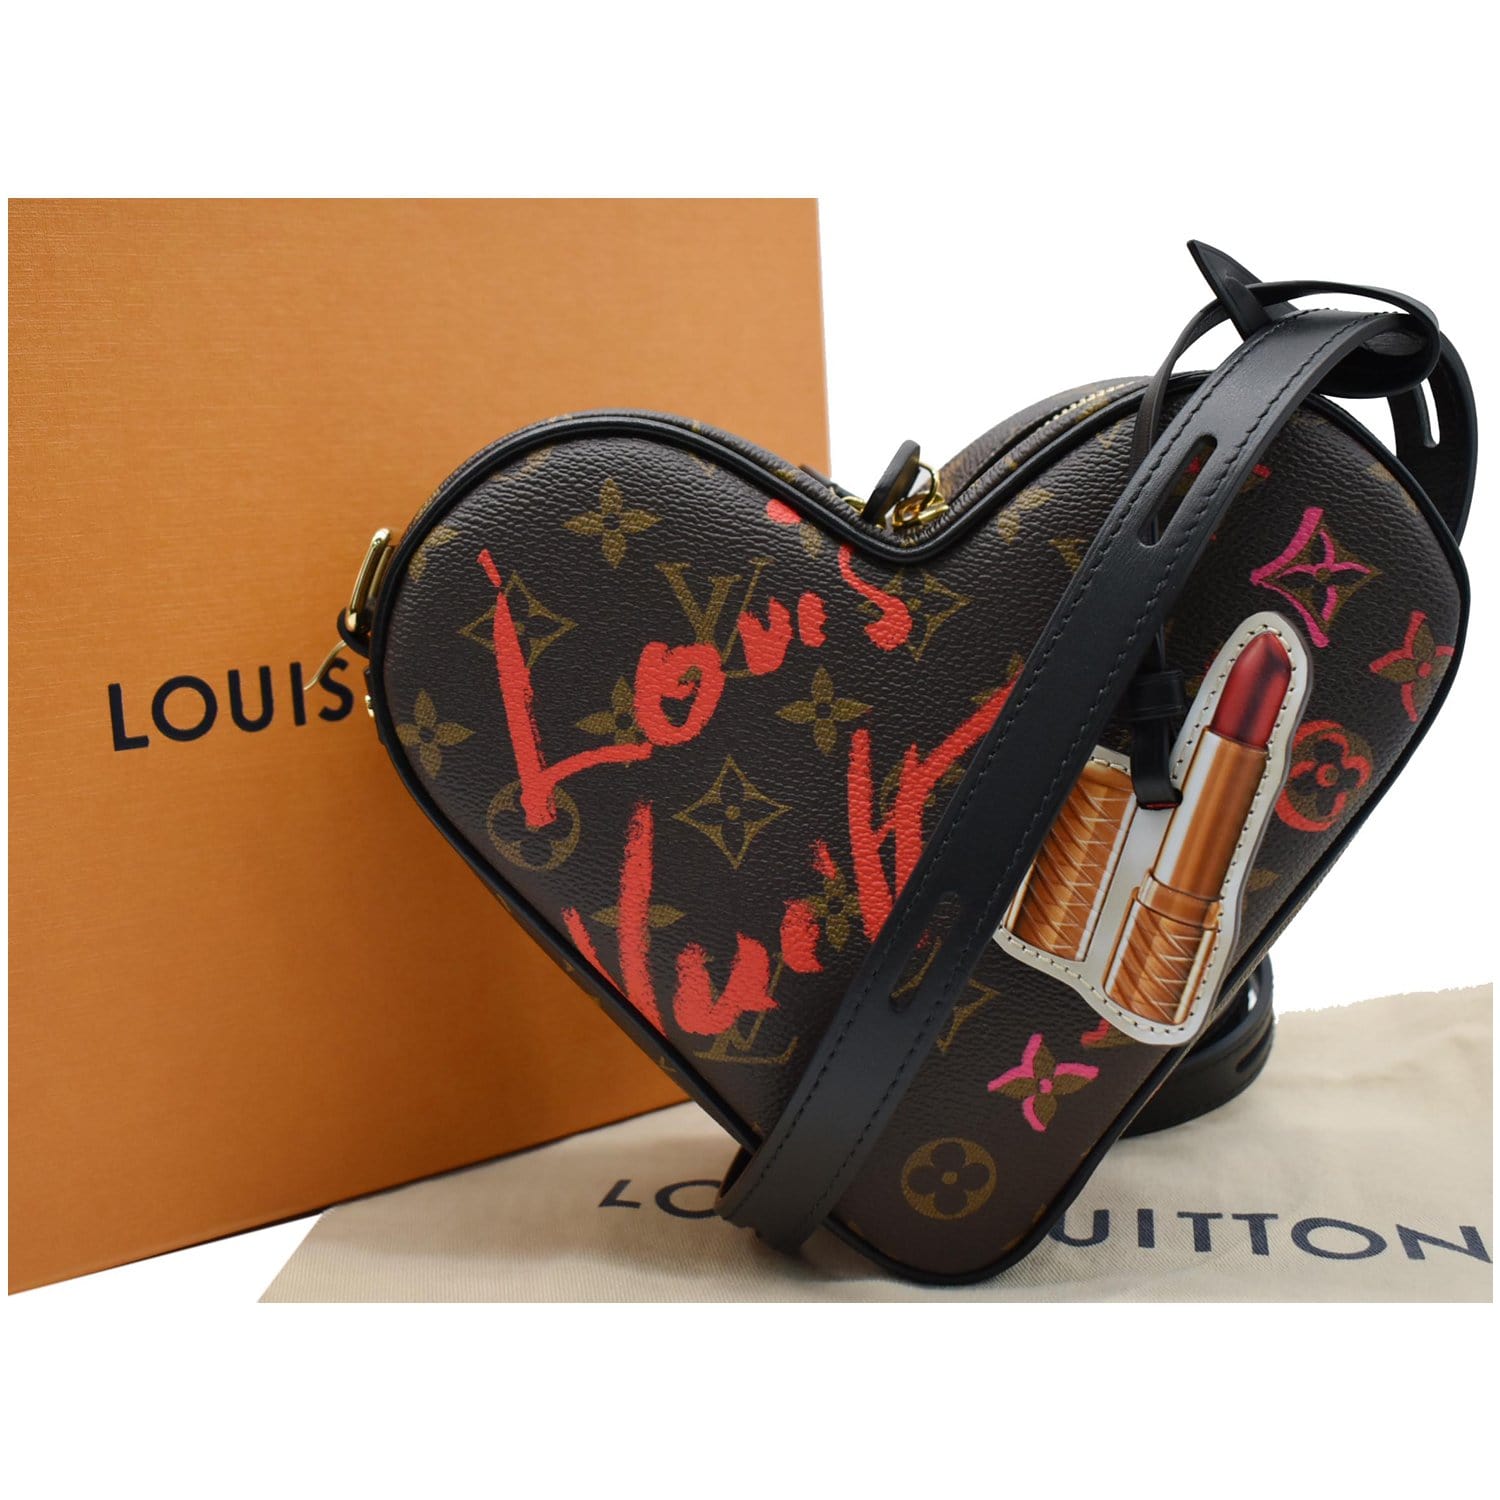 Louis Vuitton Fall In Love Sac Coeur Heart Bag Monogram Limited